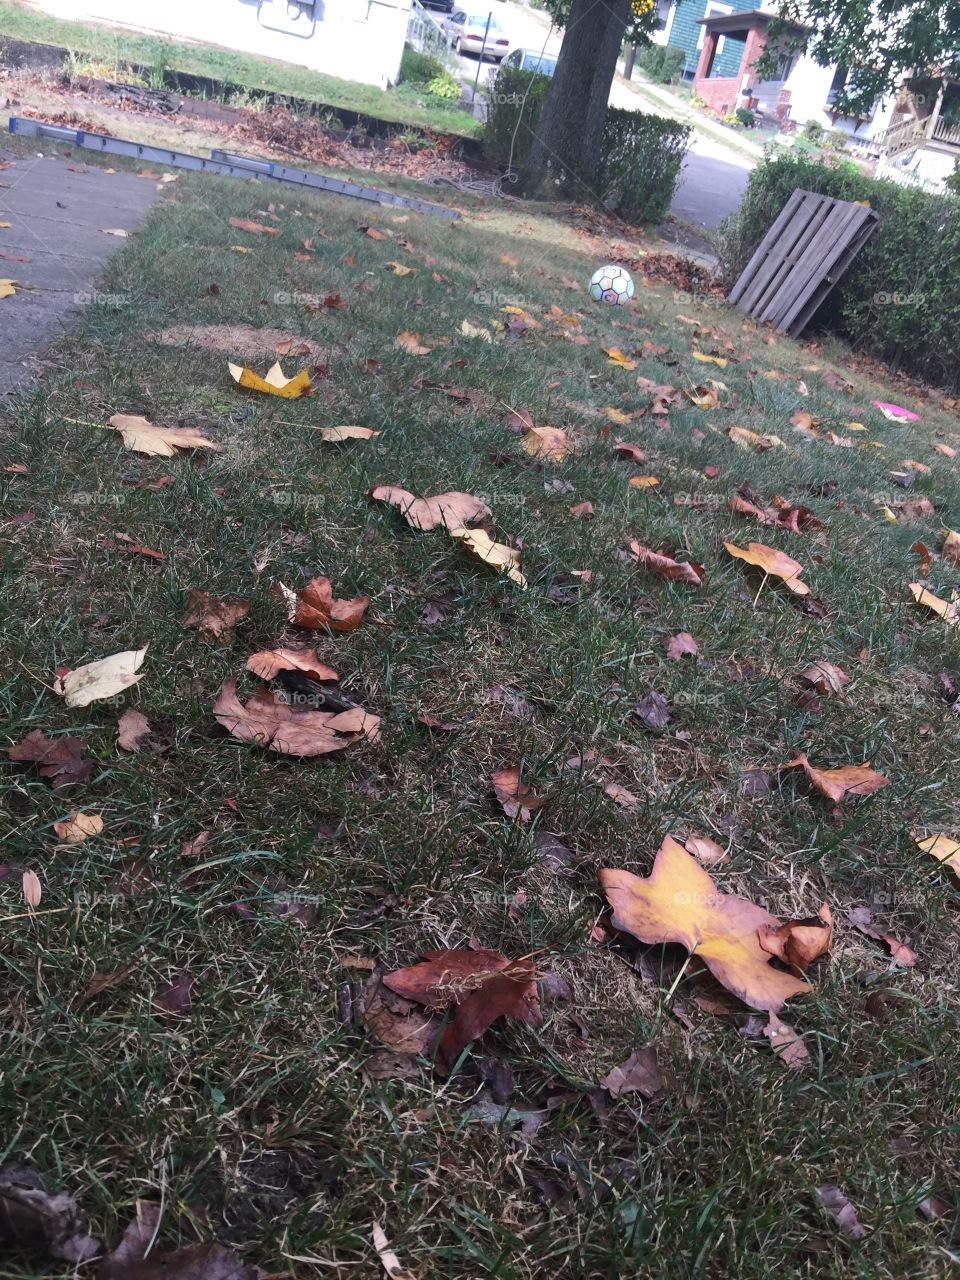 It's fall 